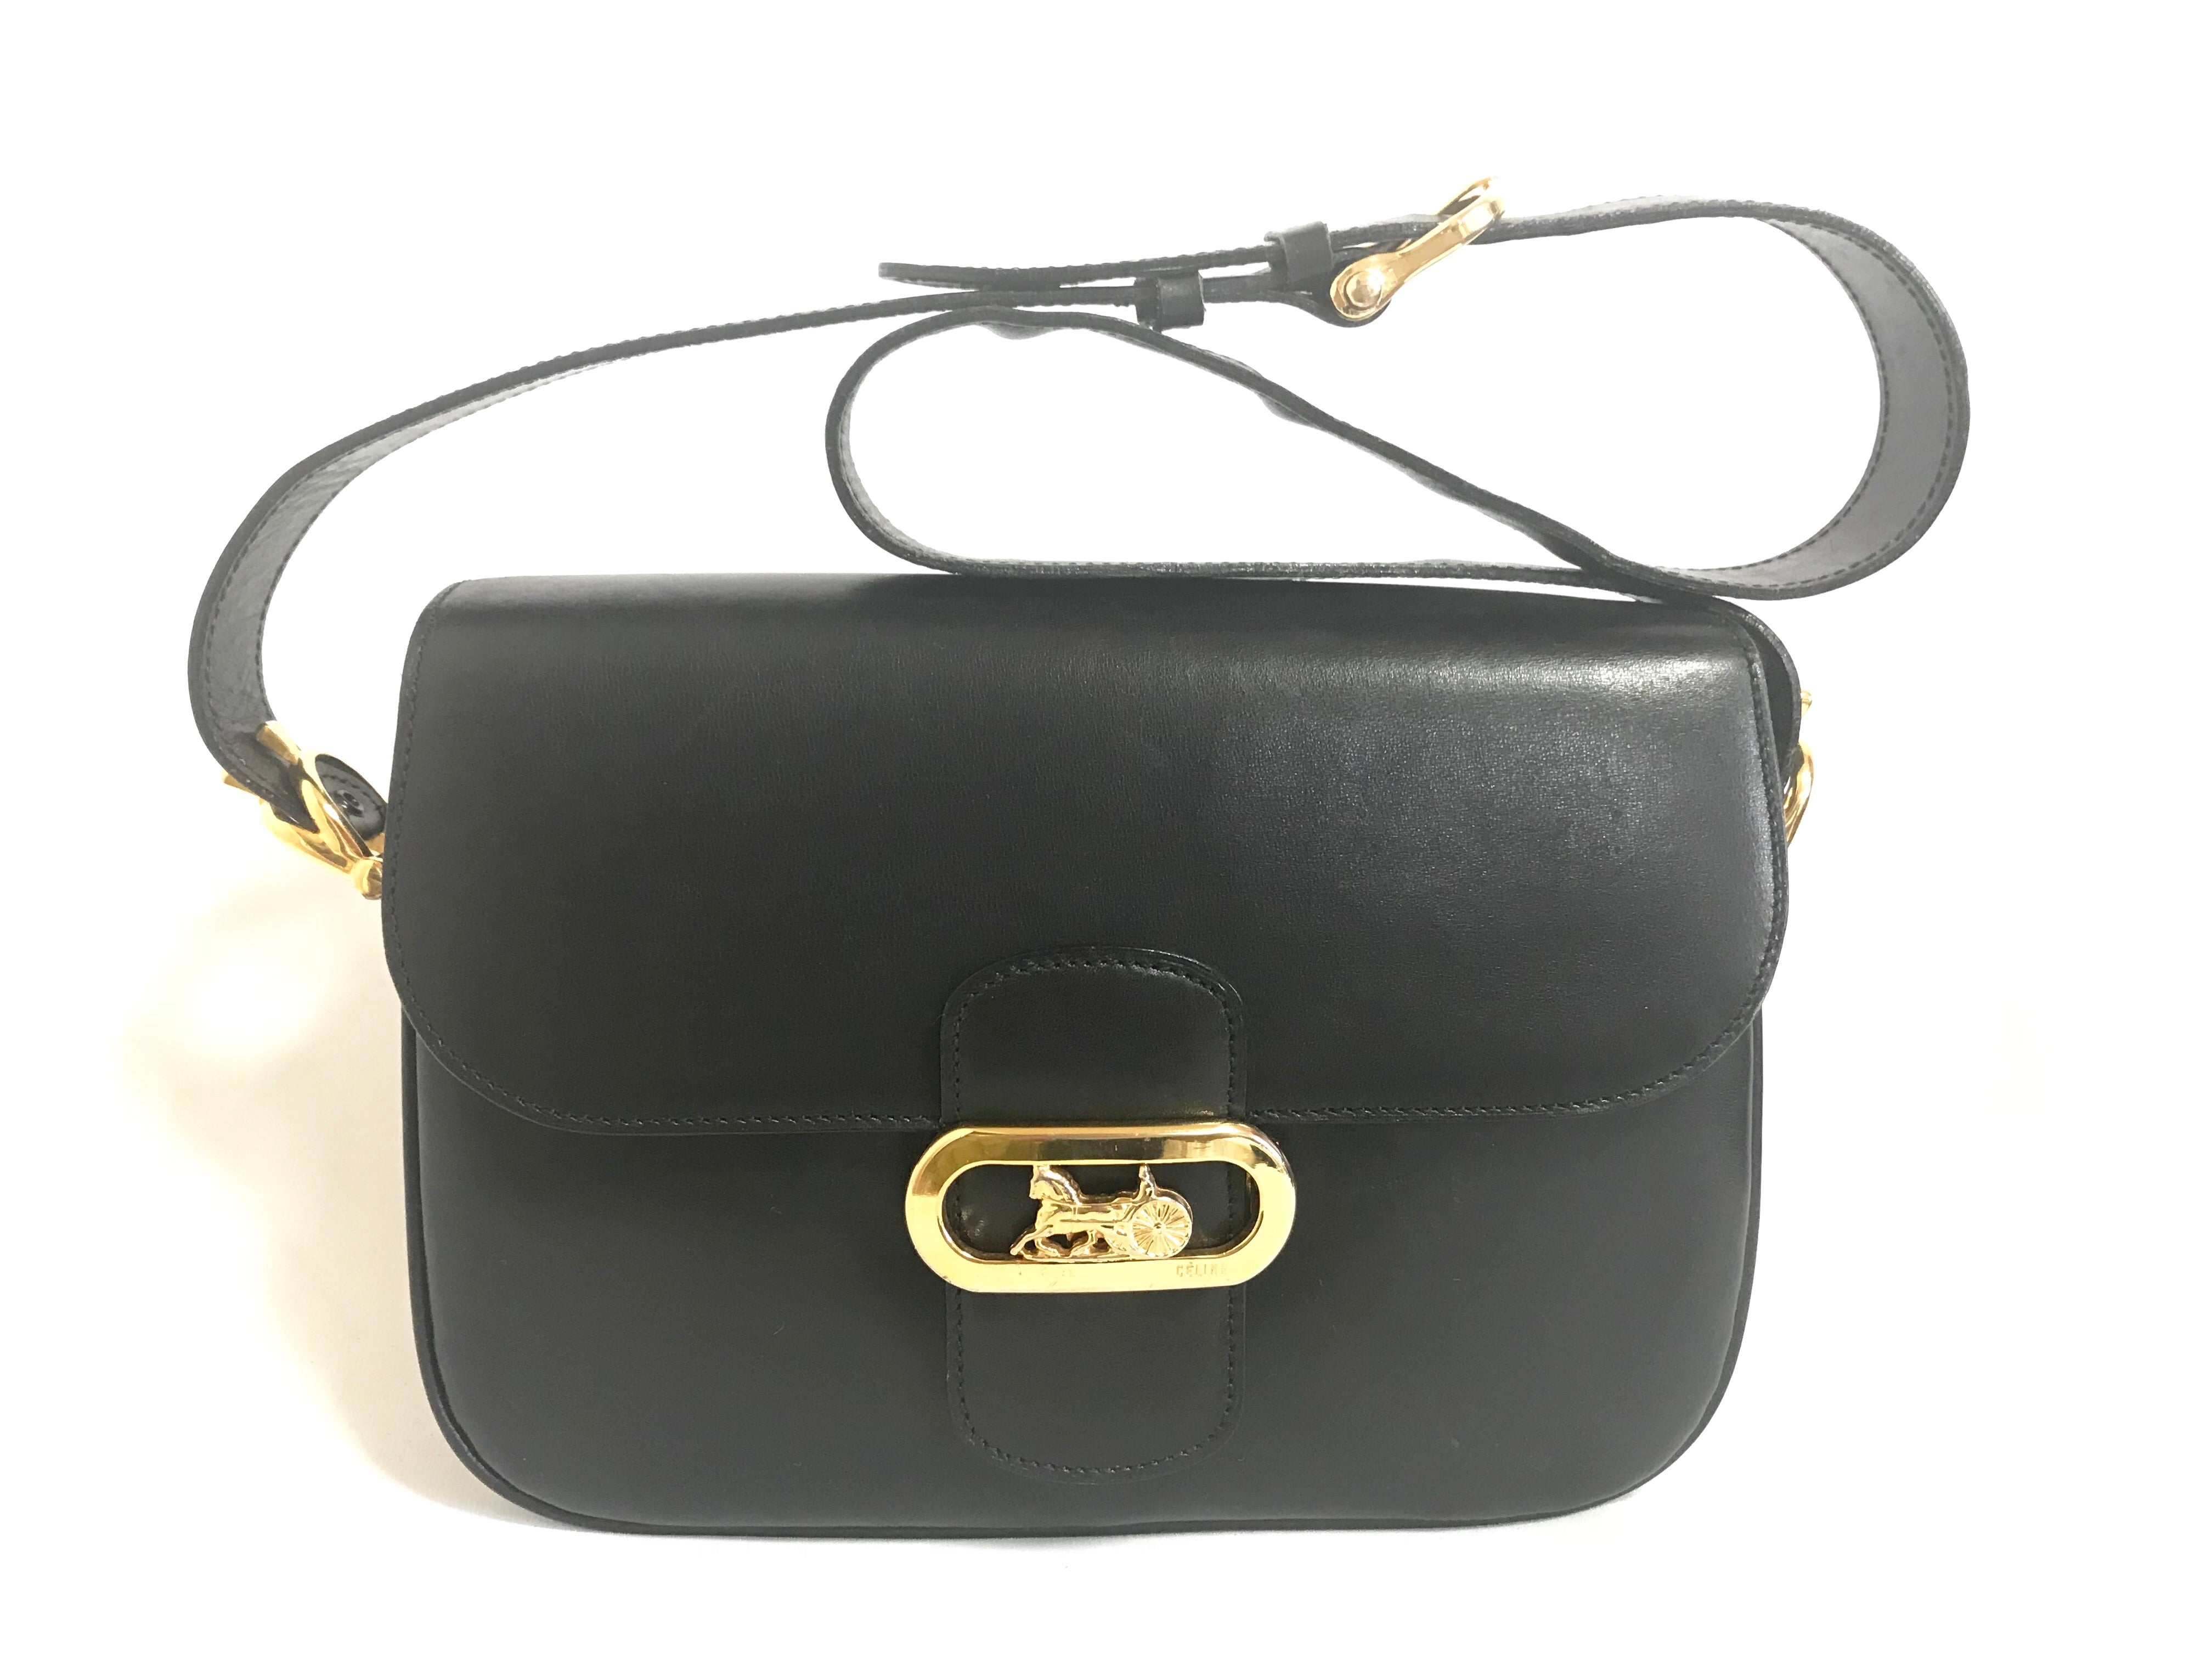 Pls help me ID this vintage Celine bag! : r/handbags